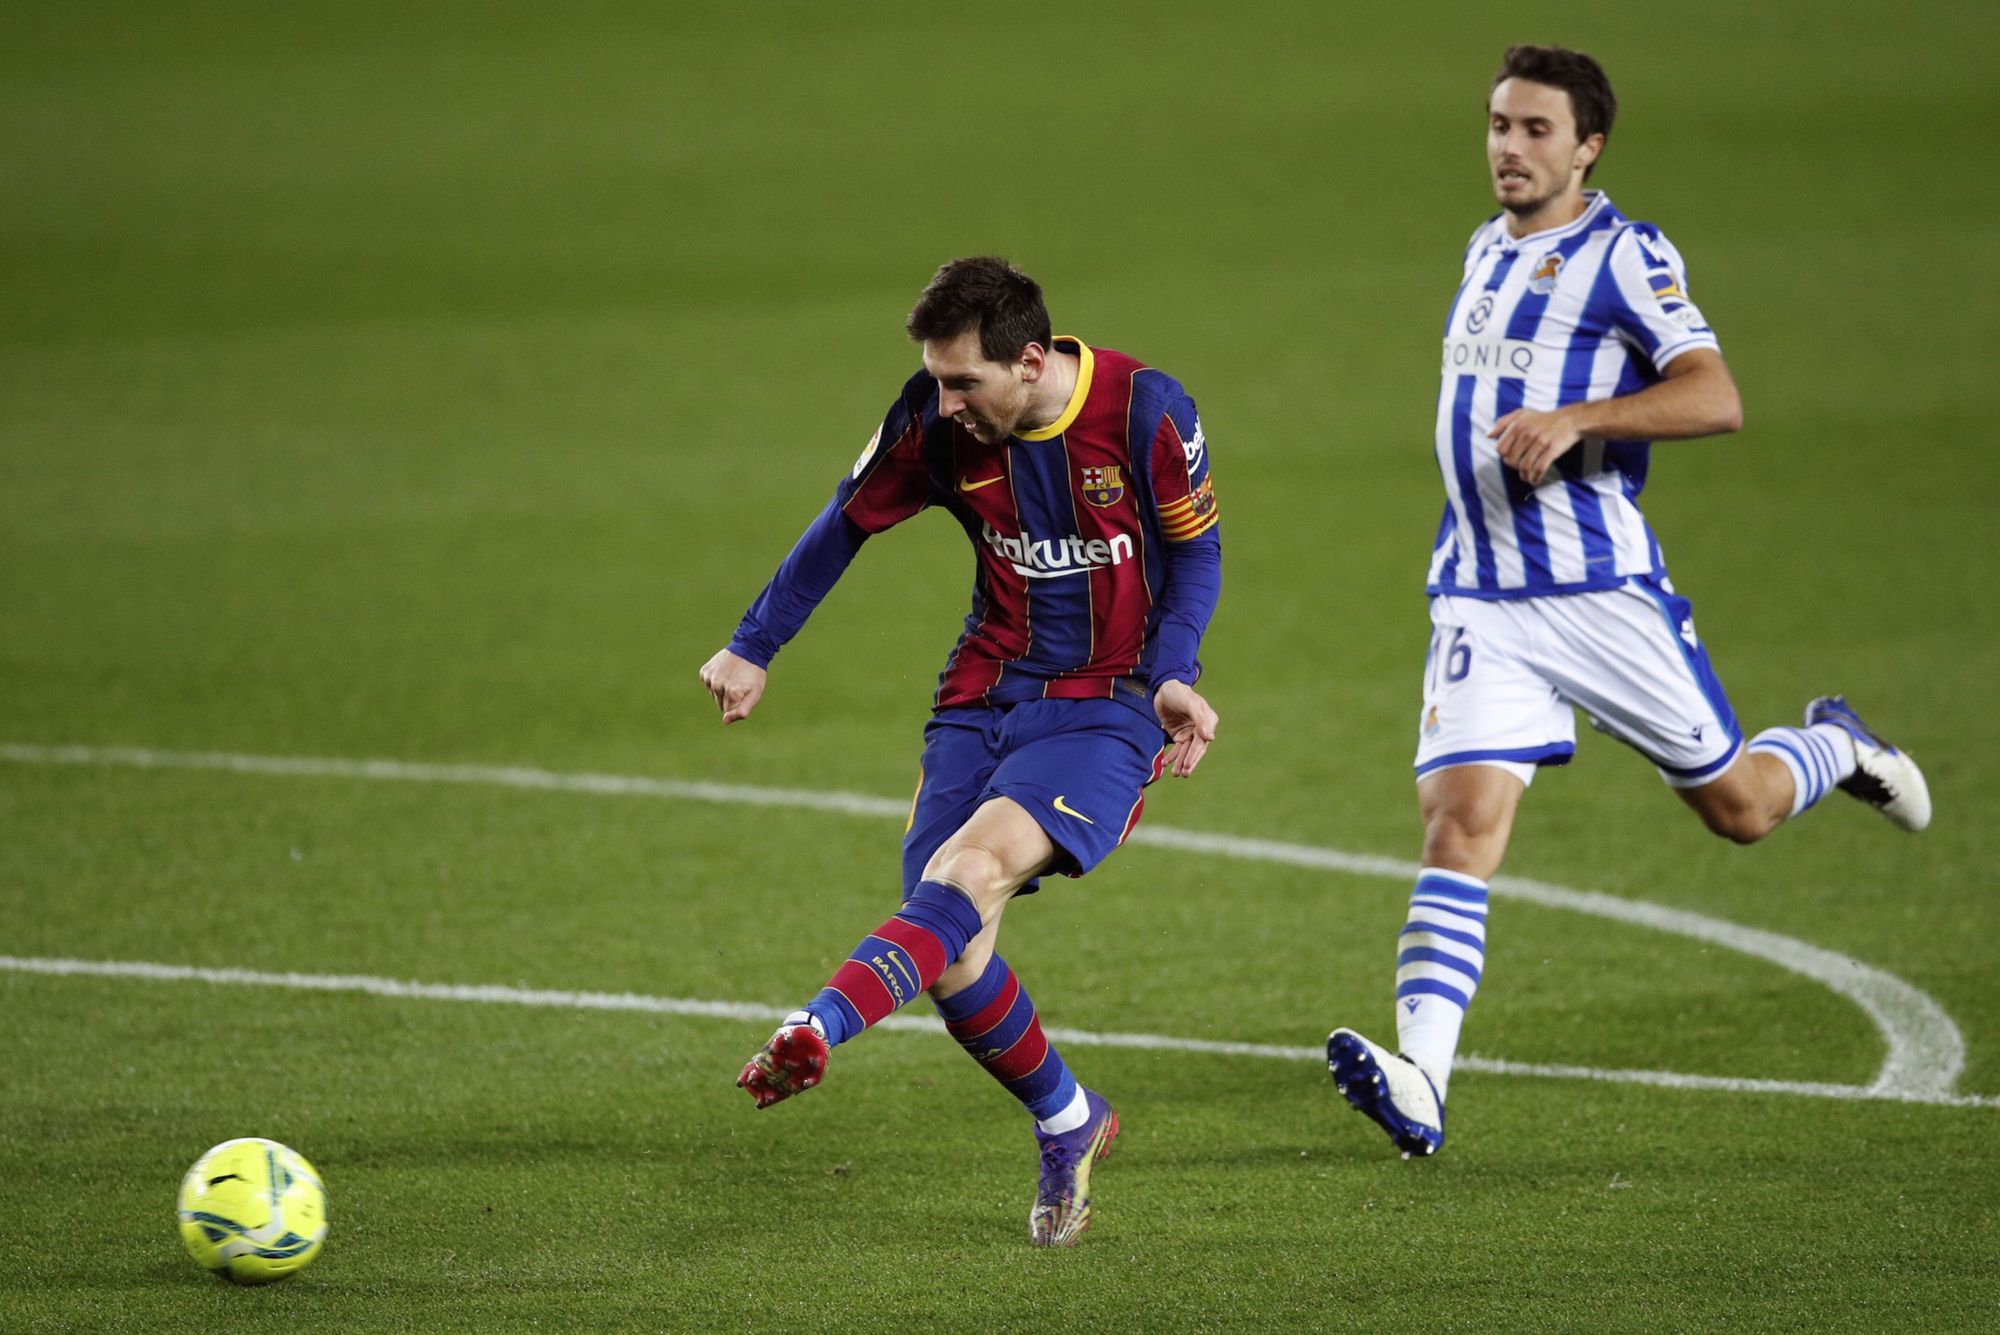 Lionel Messi gólt rúg a Real Socieadad elleni bajnoki meccsen. / Fotó: EPA/Alejandro Garcia